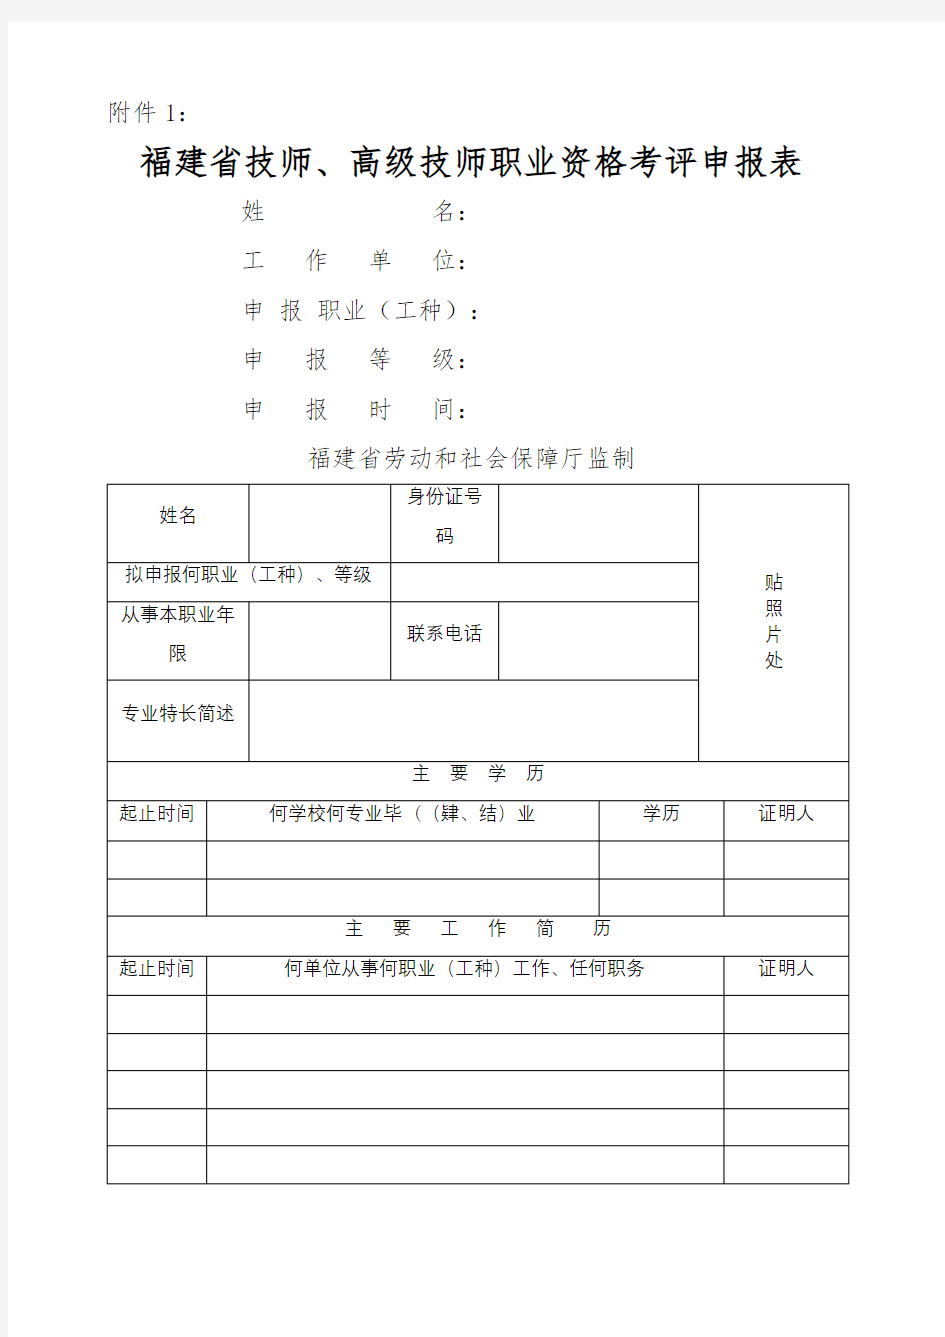 福建省技师高级技师职业资格考评申报表